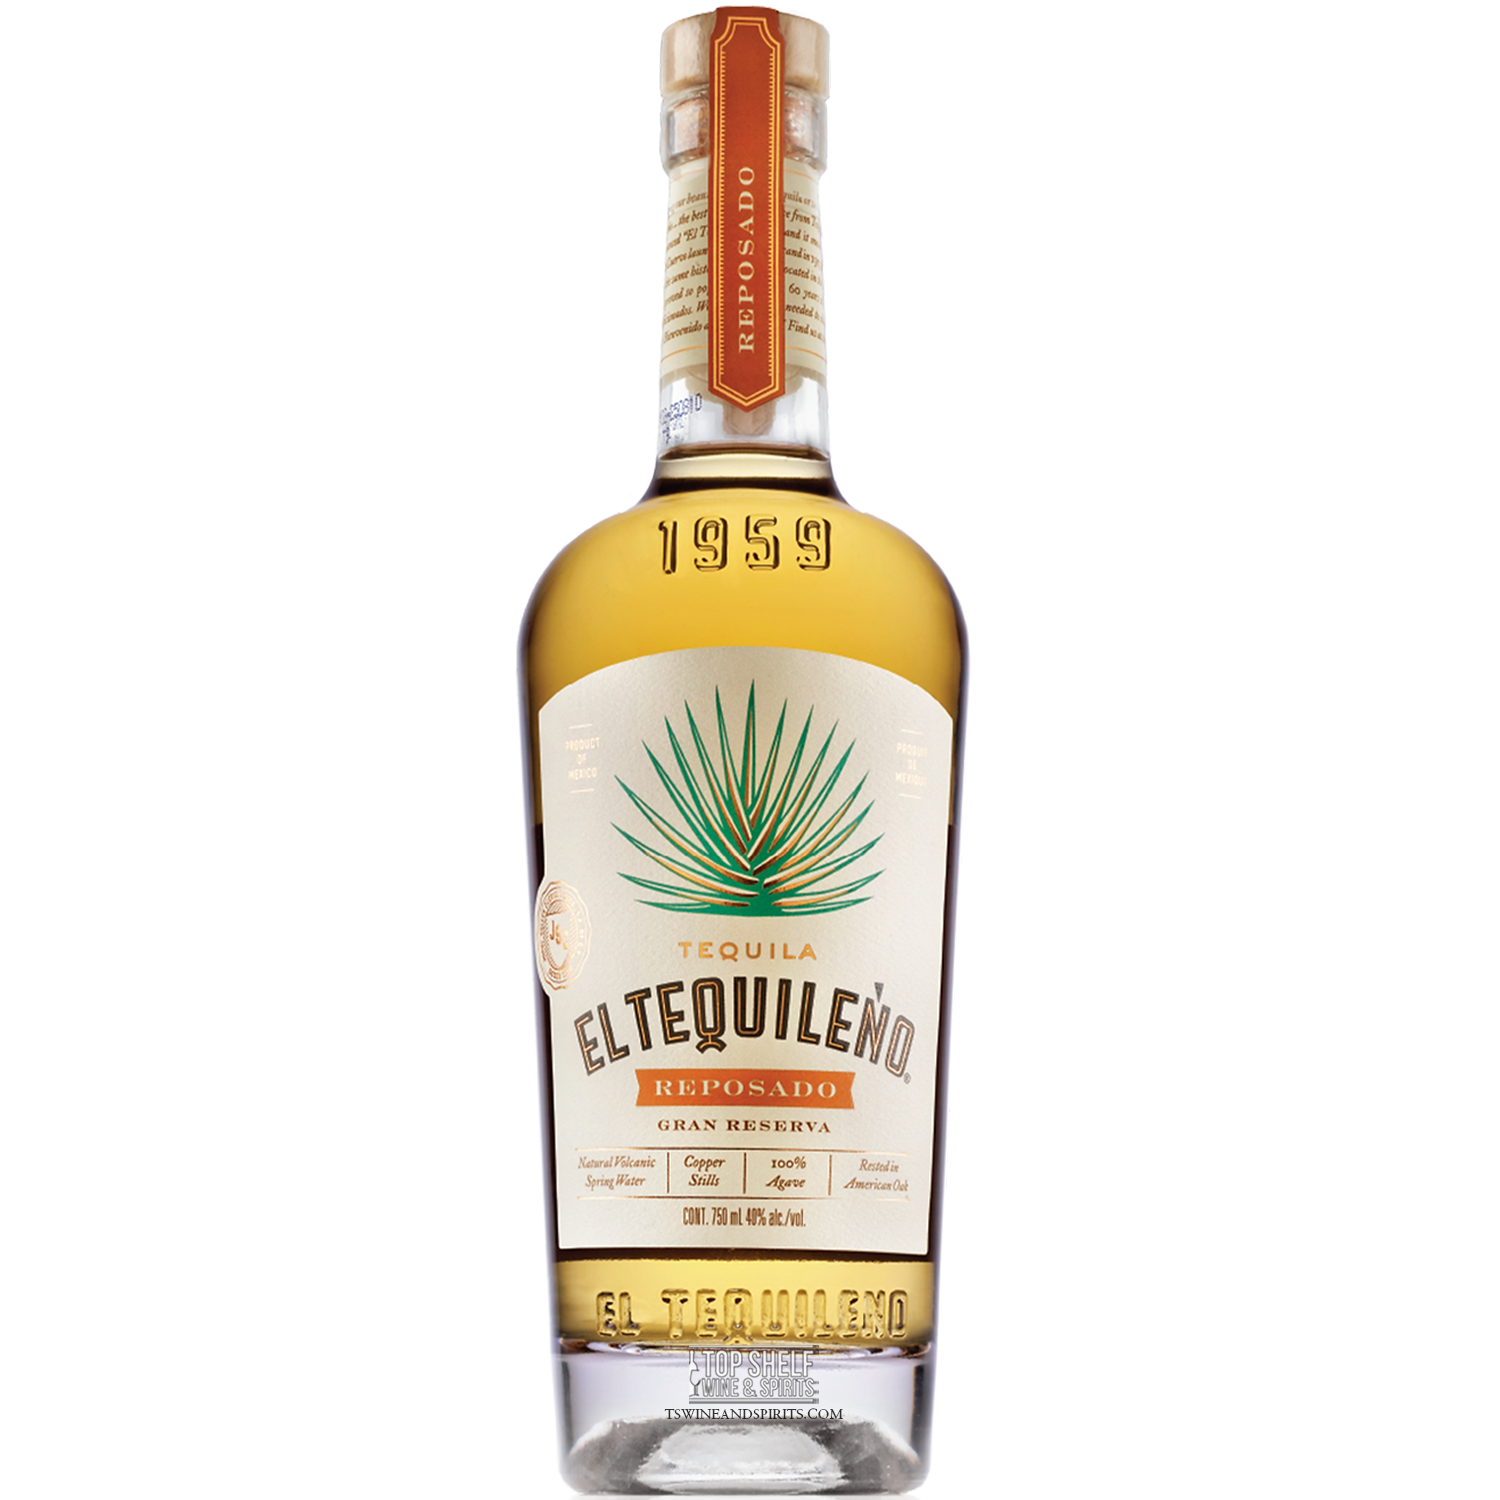 El Tequileño Reposado Gran Reserva Tequila